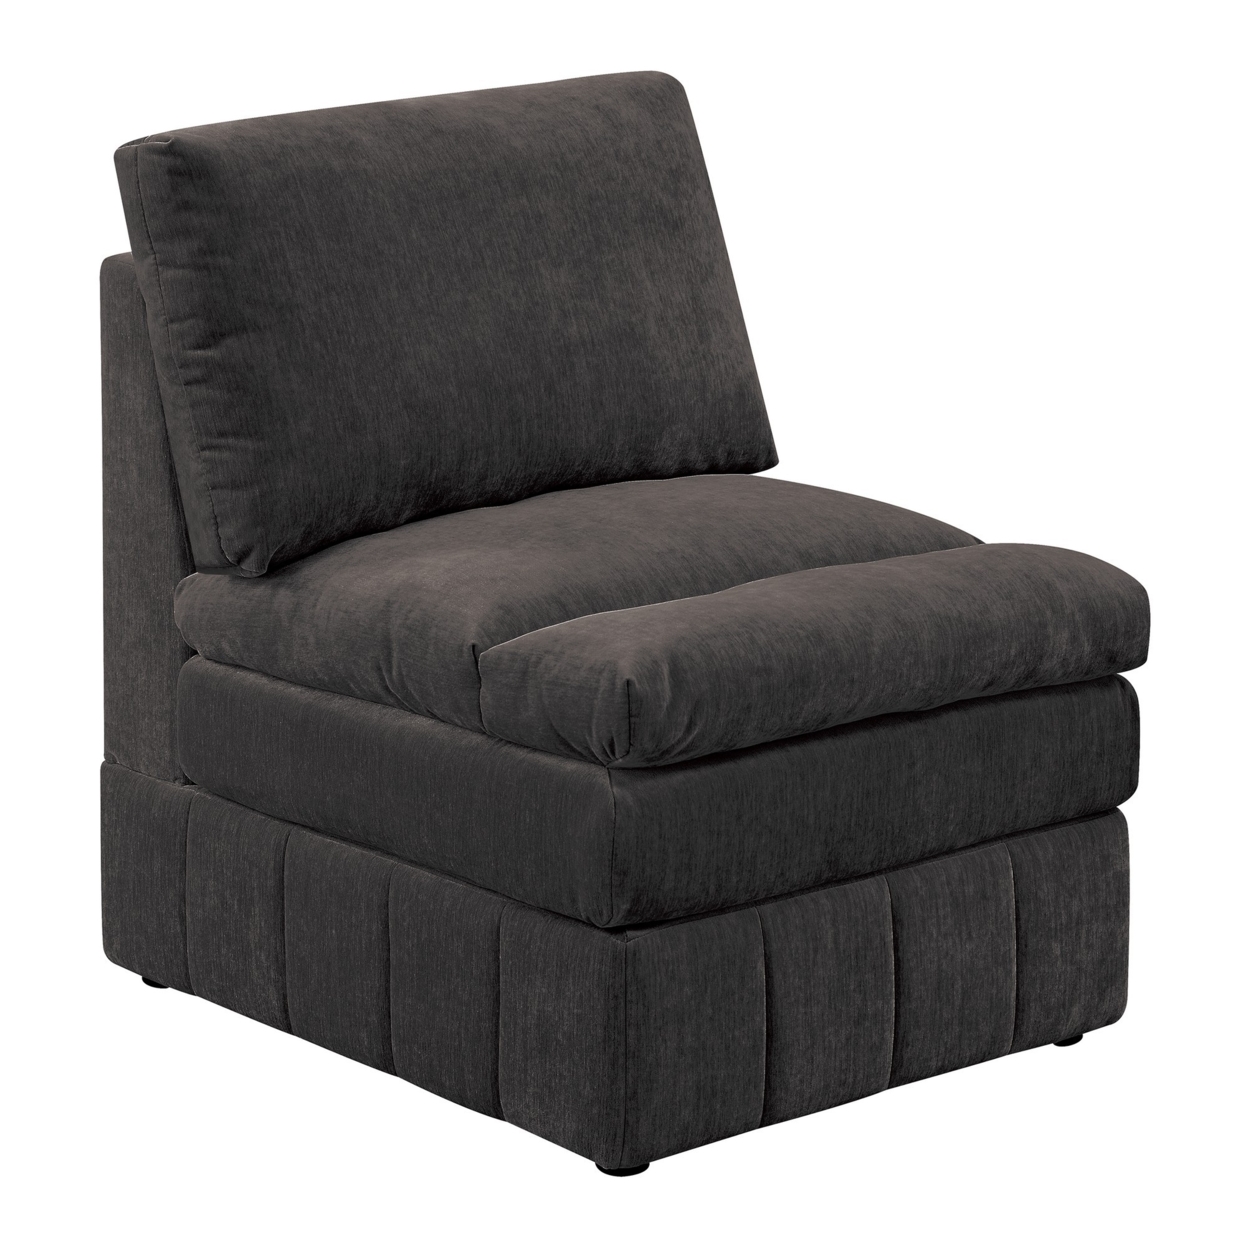 Luna 35 Inch Modular Armless Chair, 3 Layer Plush Cushion Seat, Dark Gray- Saltoro Sherpi